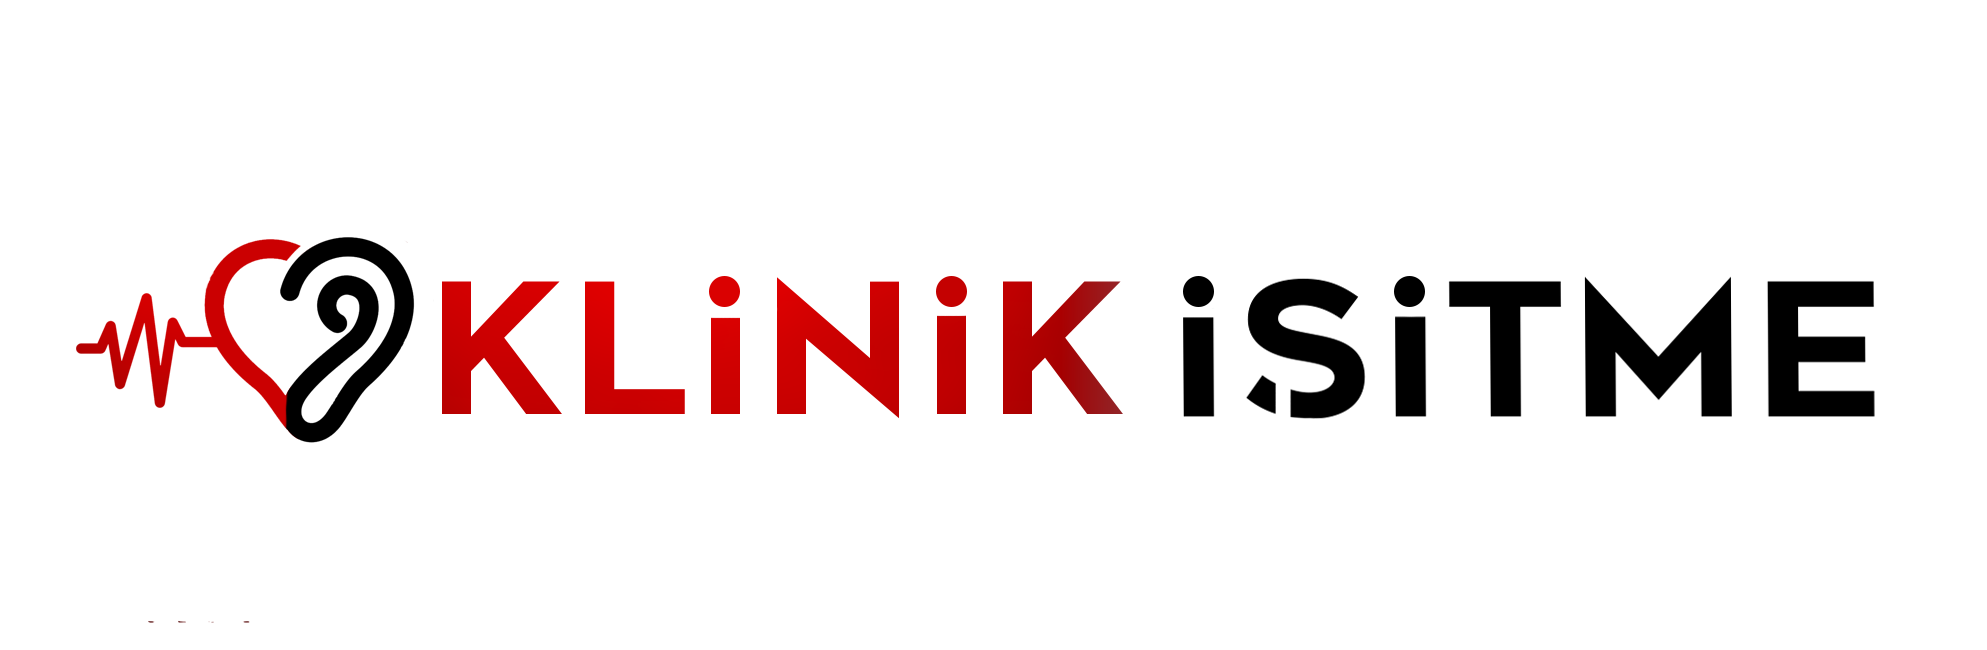 klinik-logo-e1623098024694.png